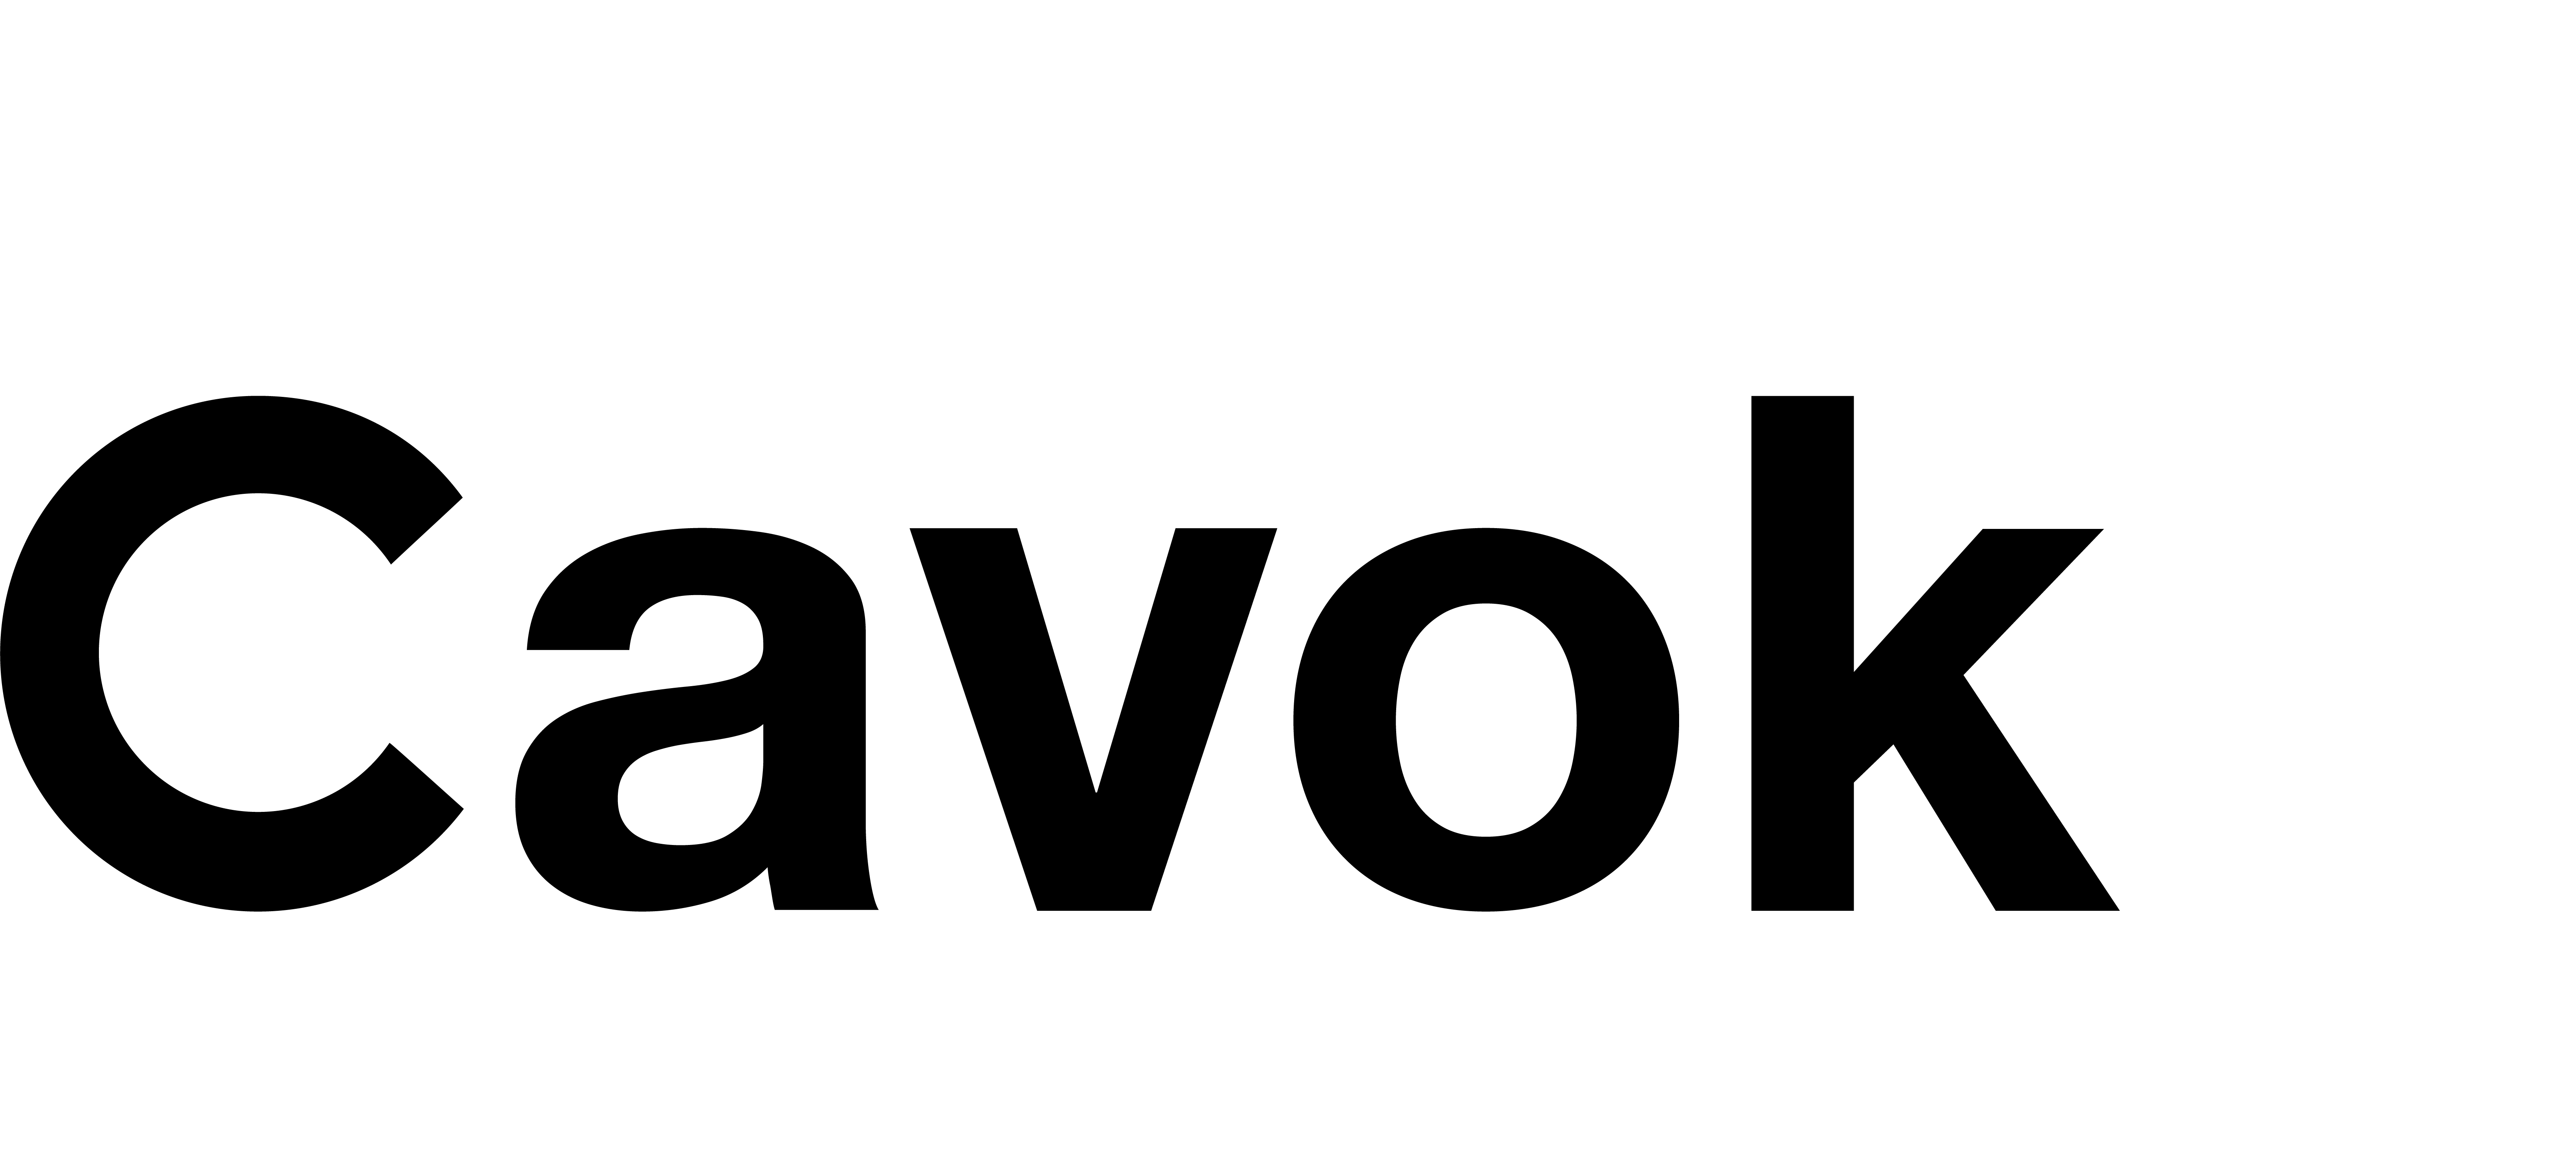 Cavok Engenharia - Engenheiro aeronáutico - Cavok Aeronáutica